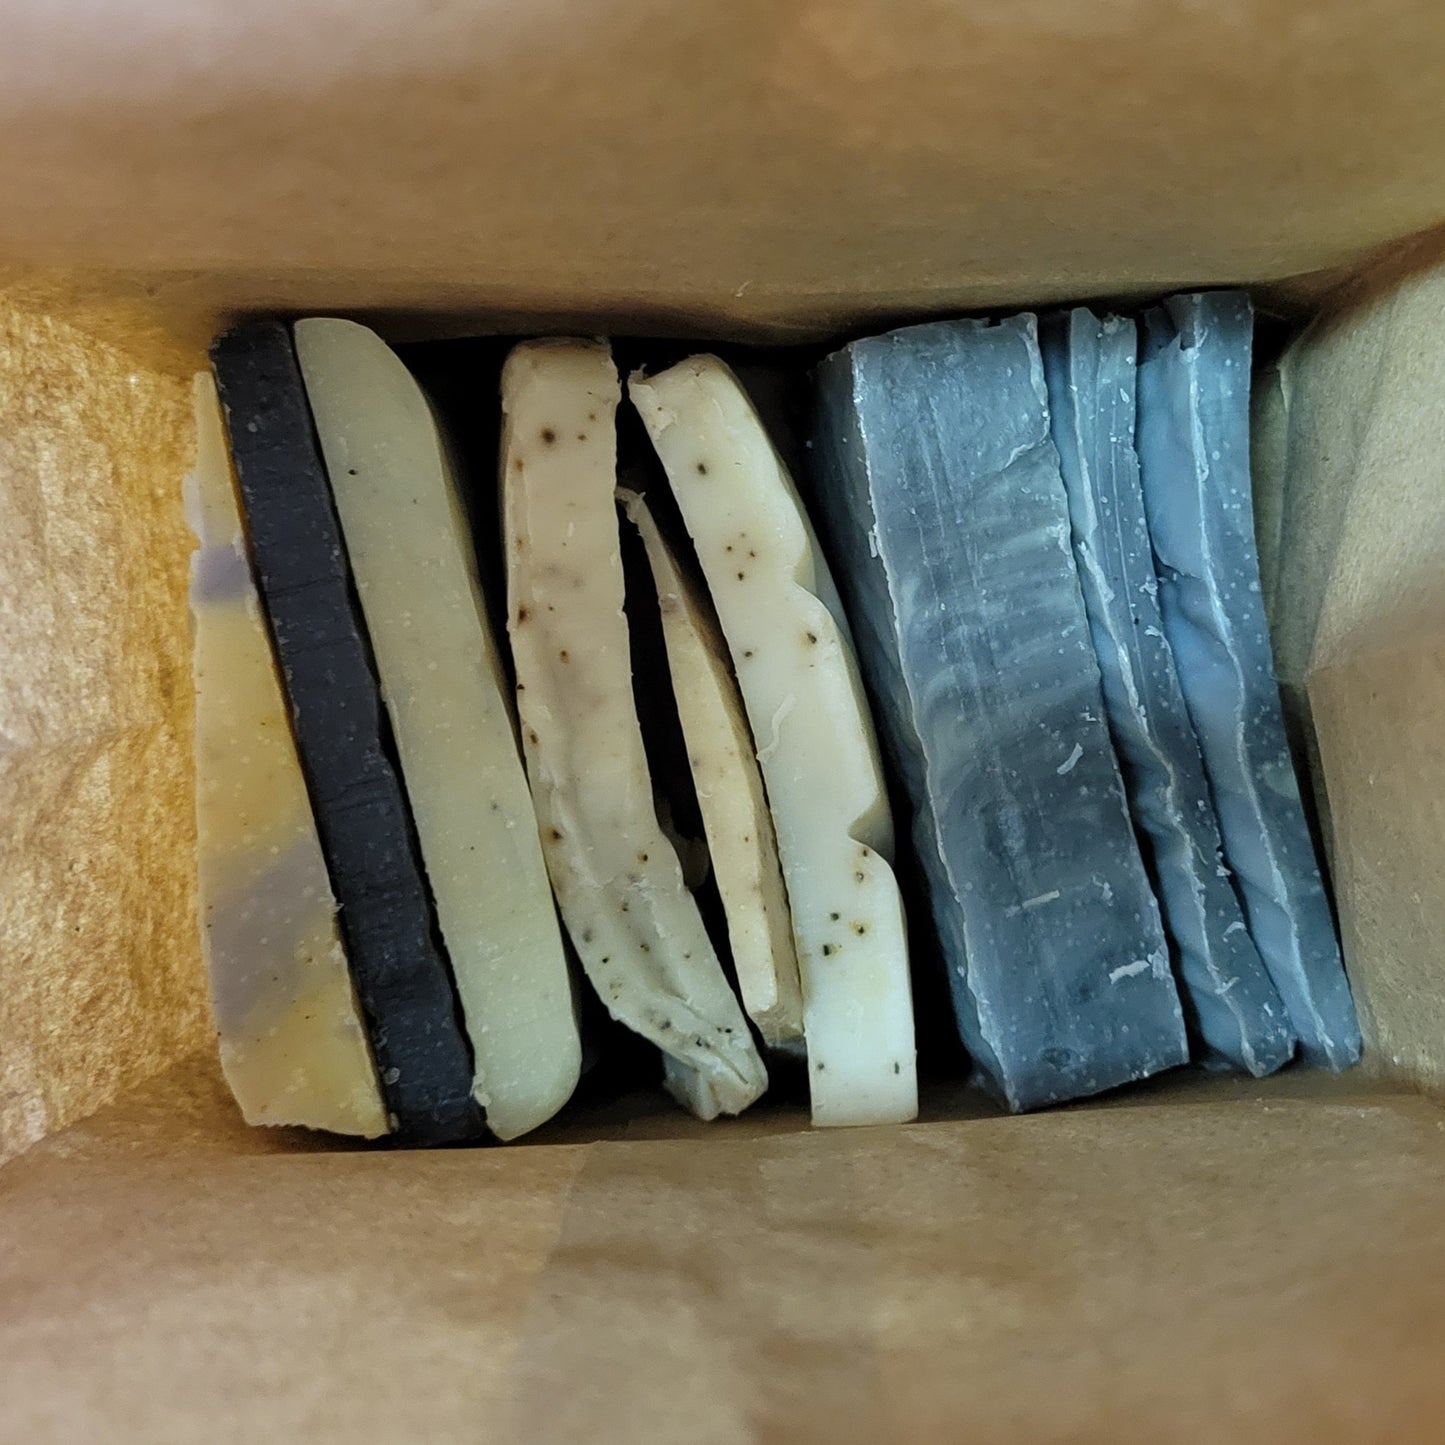 1 pound bulk soap scraps bag